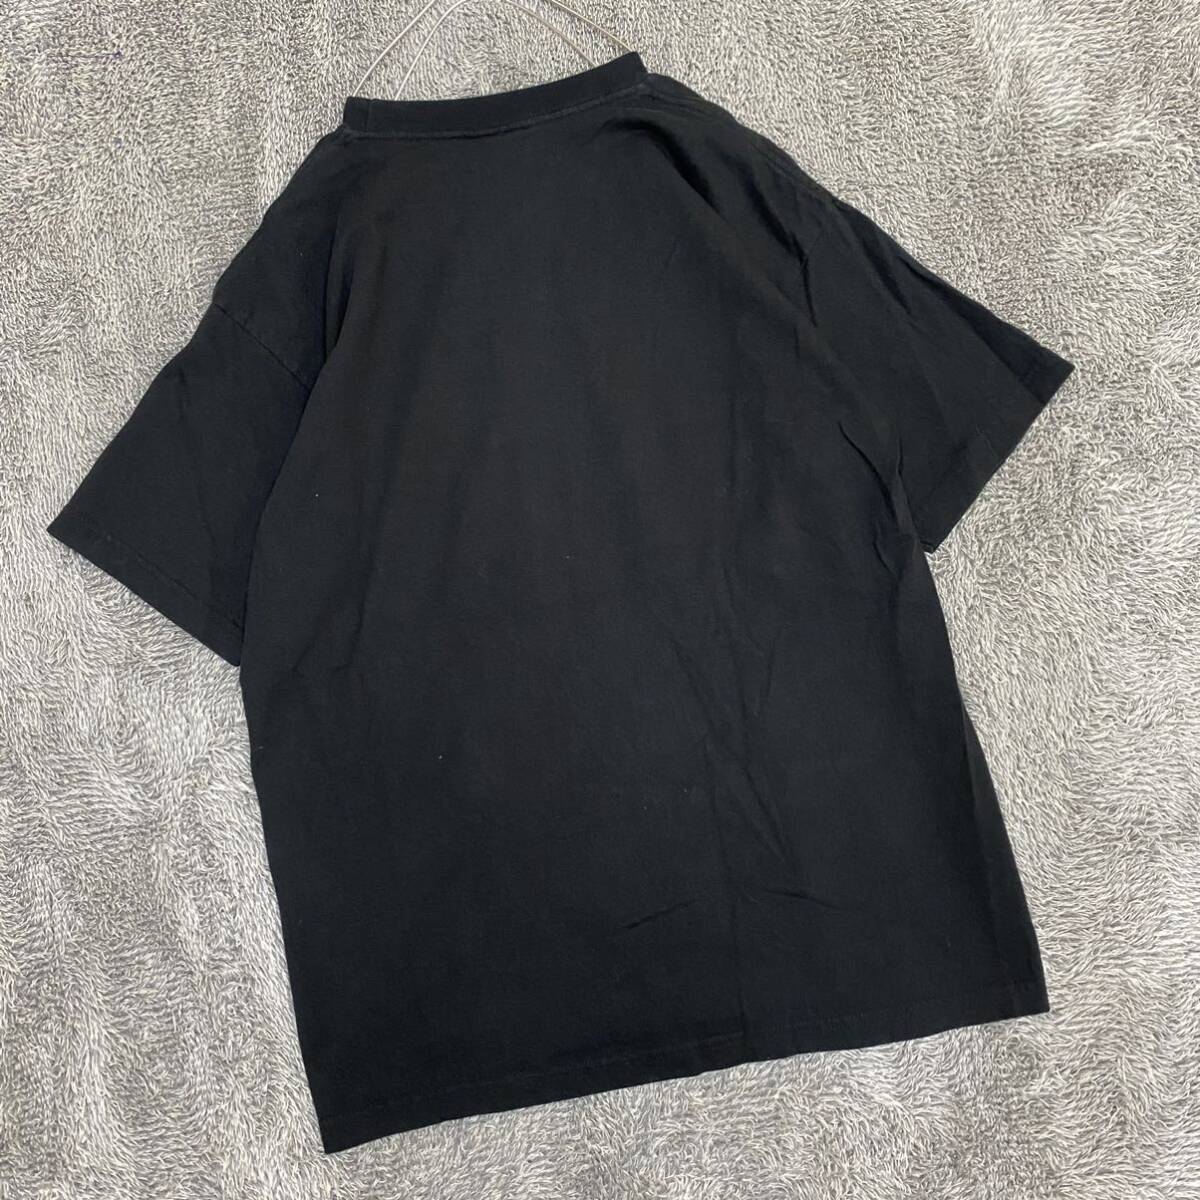 VINTAGE ヴィンテージ ALLIANCE Tシャツ 半袖カットソー サイズL ブラック 黒 メンズ トップス 最落なし （A19）_画像2